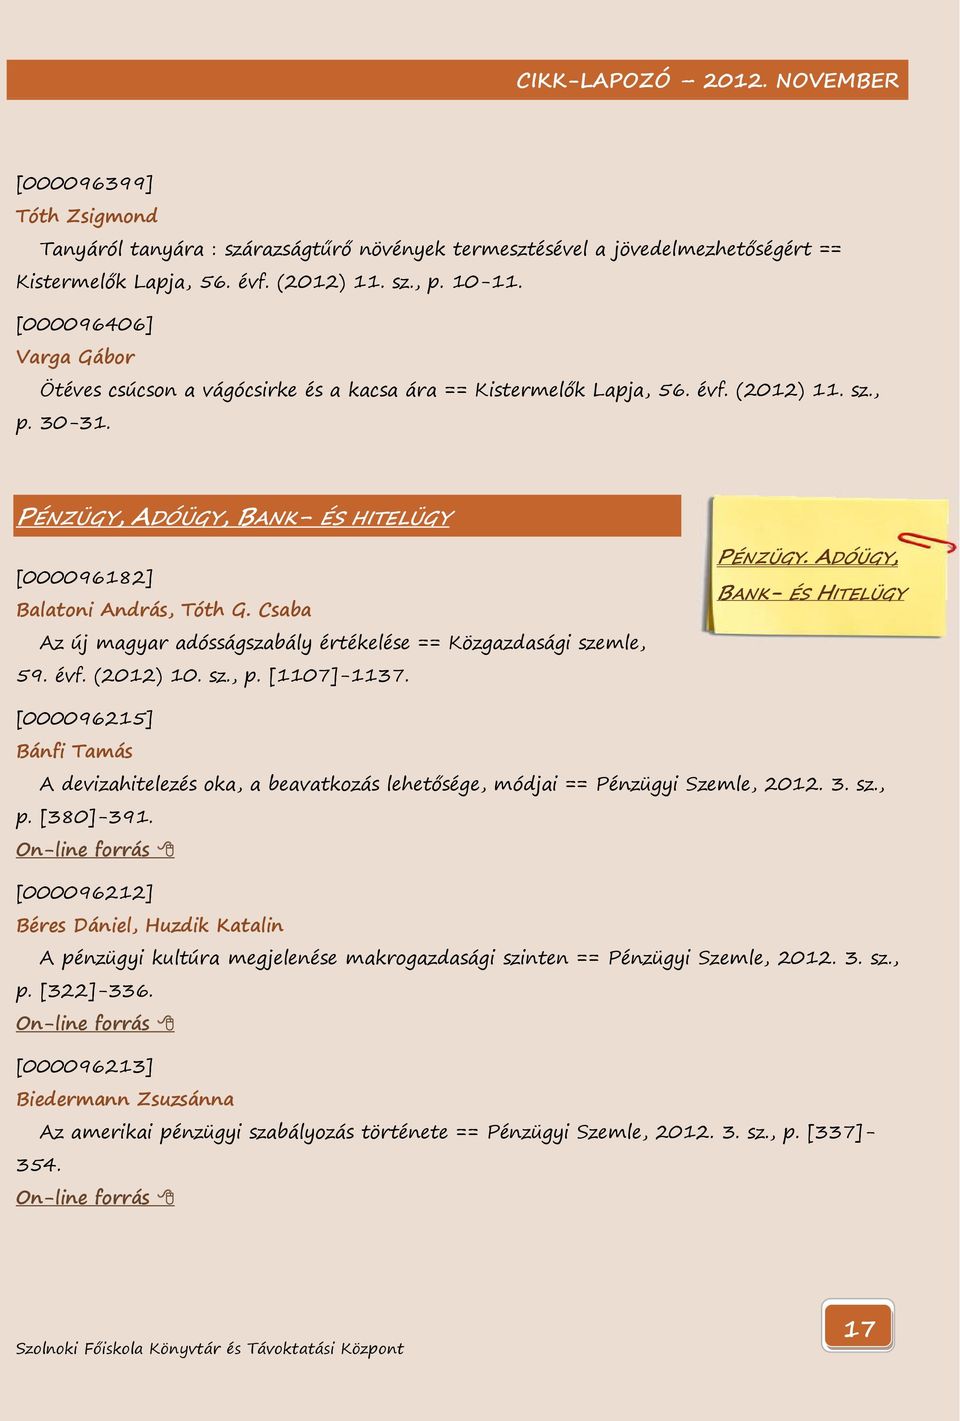 Csaba Az új magyar adósságszabály értékelése == Közgazdasági szemle, 59. évf. (2012) 10. sz., p. [1107]-1137. PÉNZÜGY.